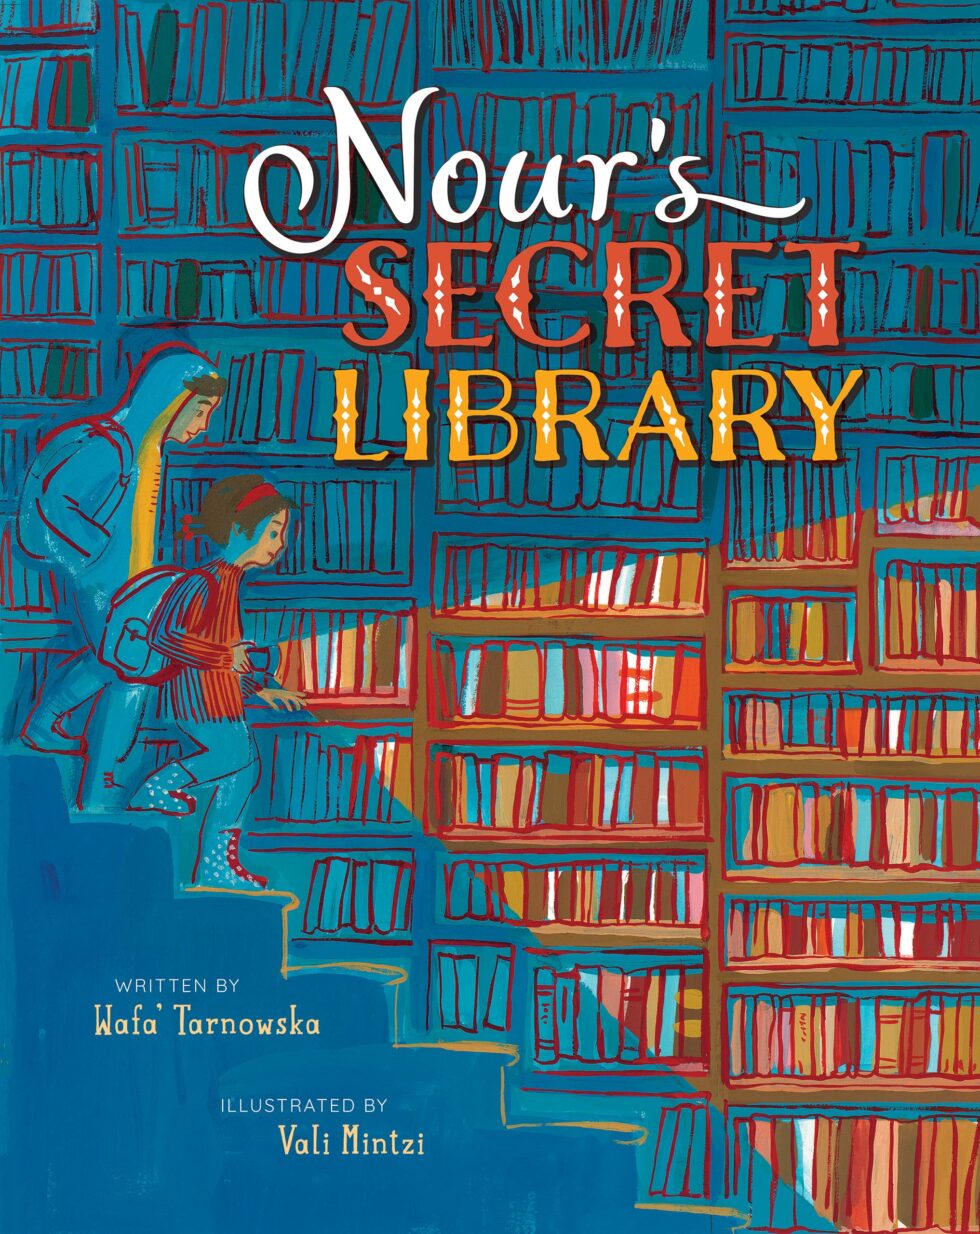 Nour’s Secret Library